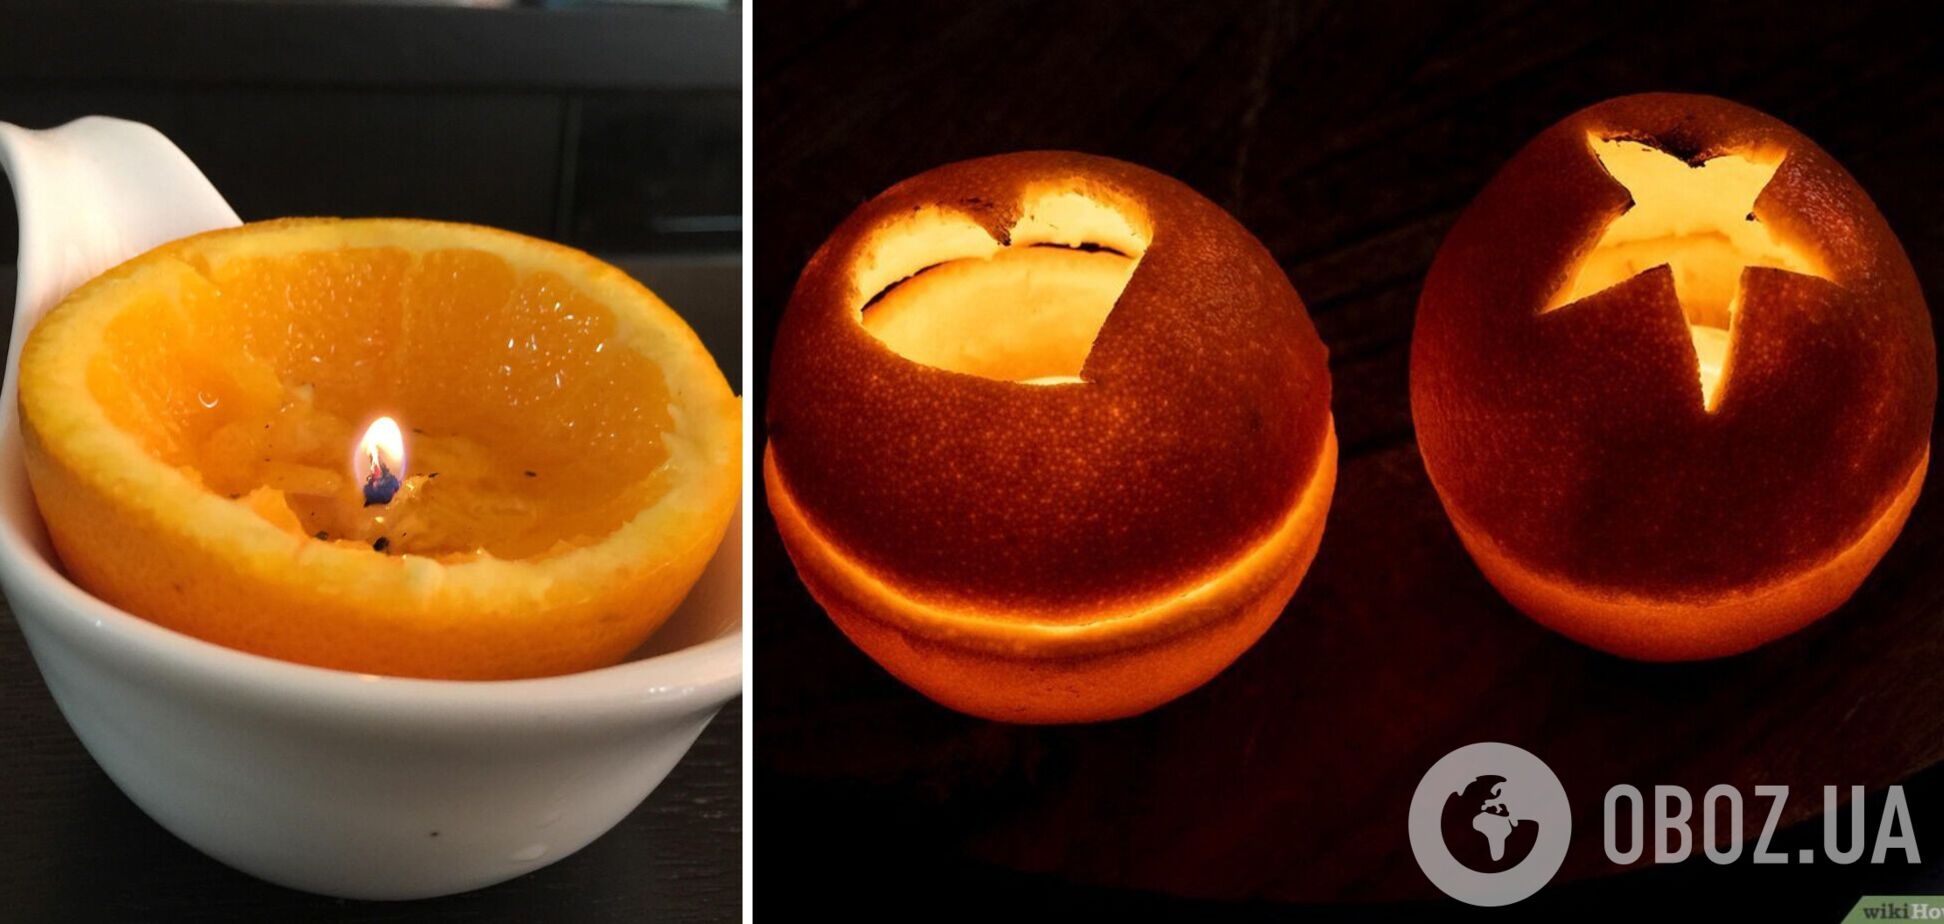 Як зробити ароматну свічку із апельсина на новорічий стіл. Відео